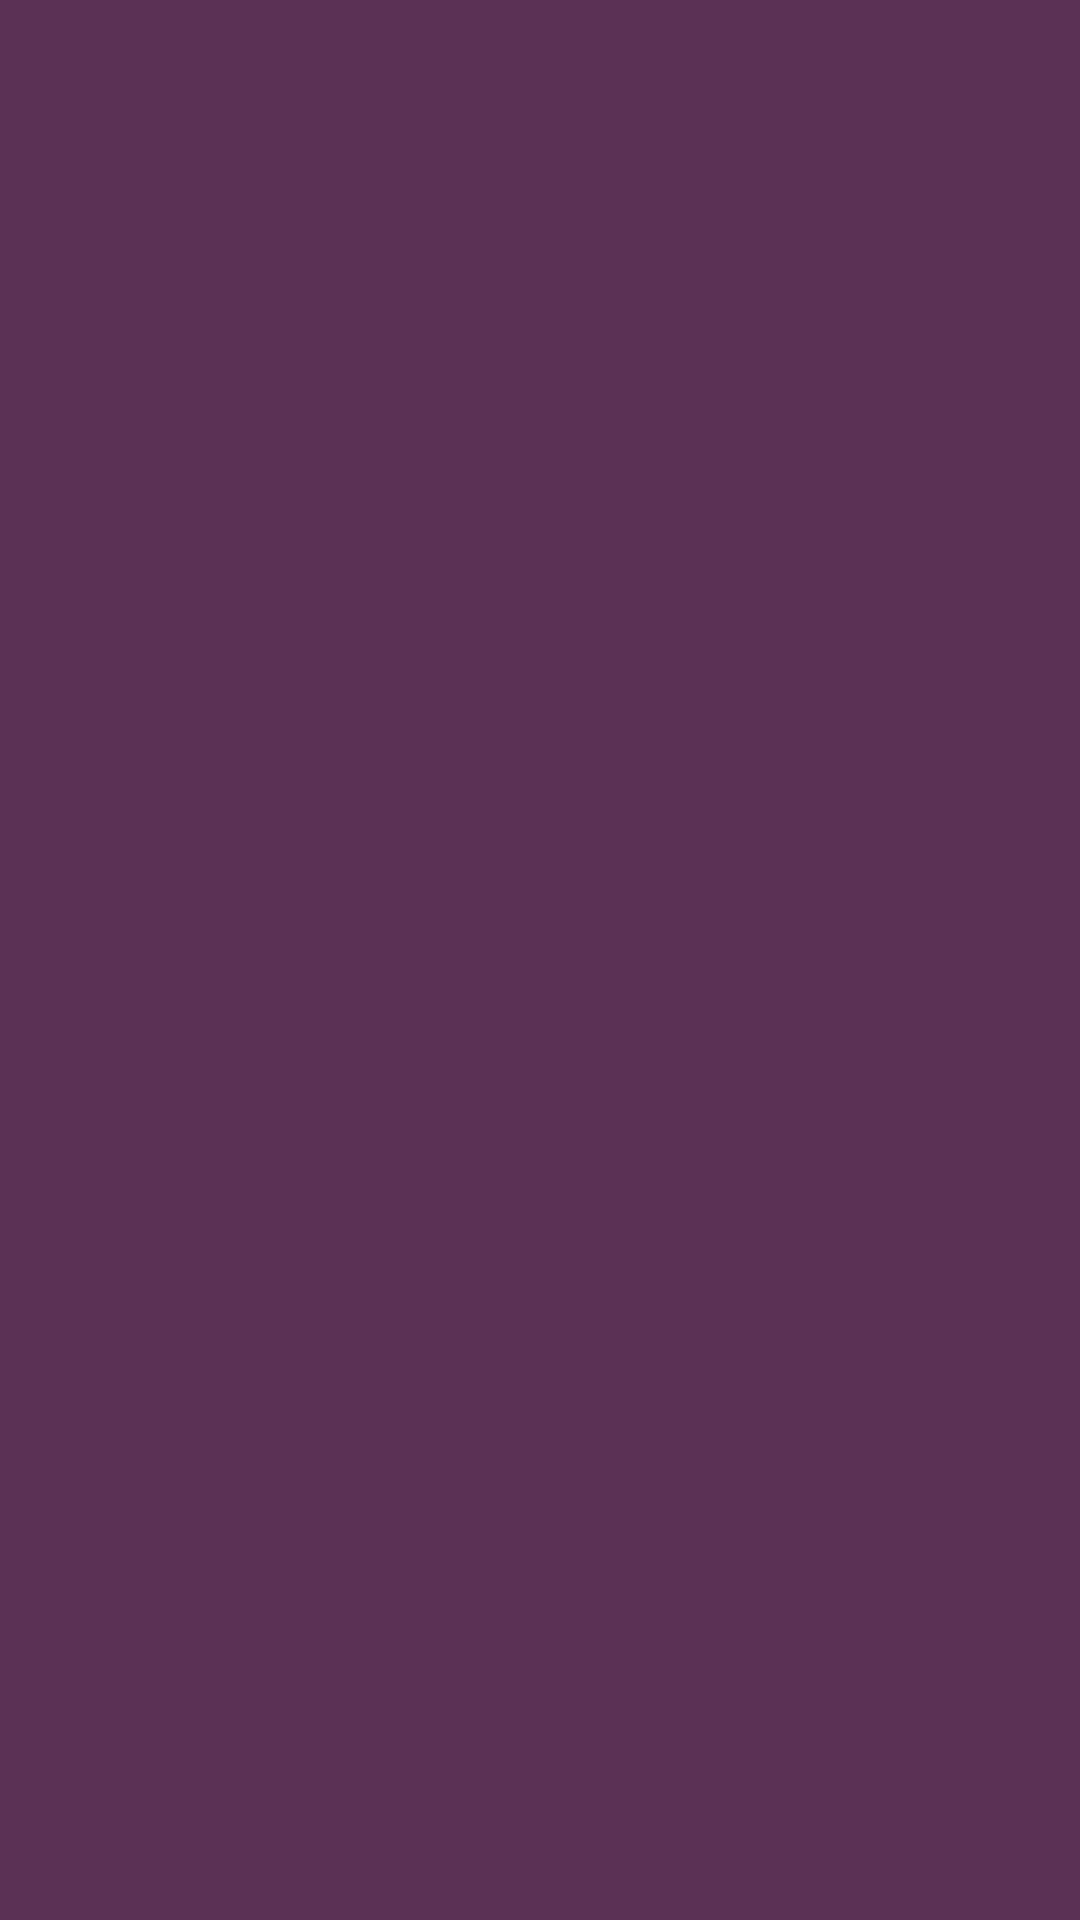 1080x1920 Japanese Violet Solid Color Background